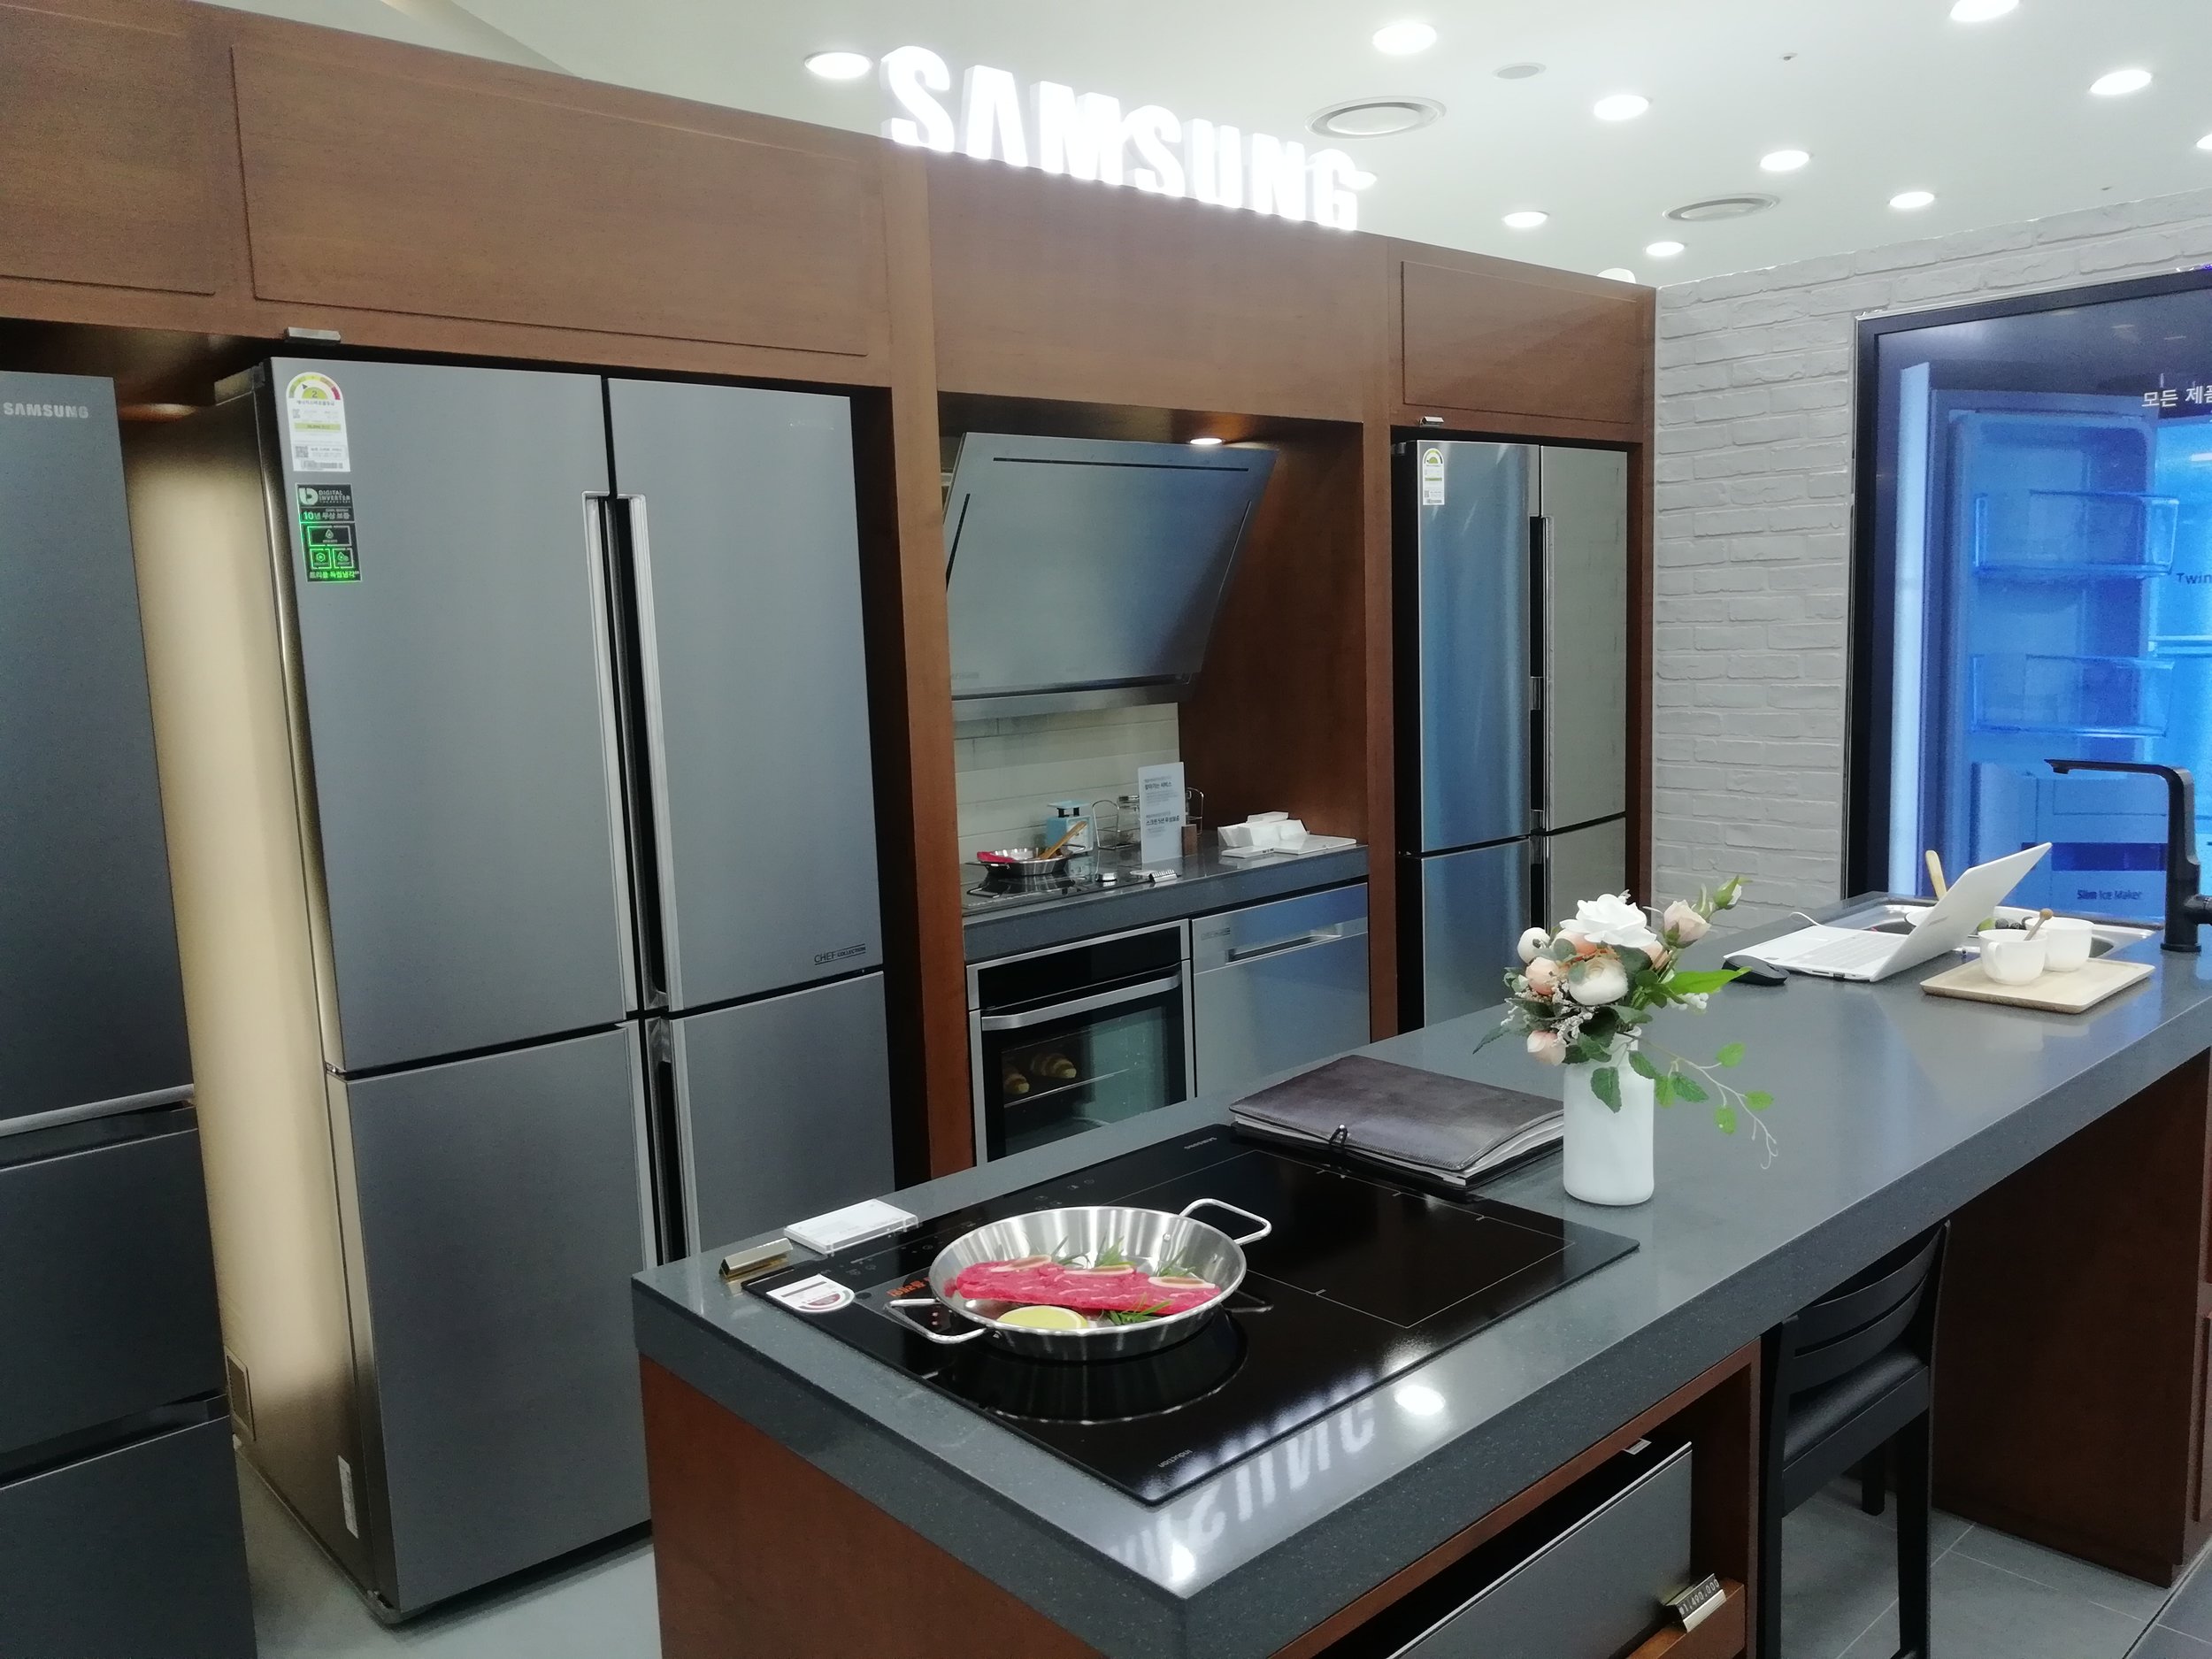 Samsung kitchen